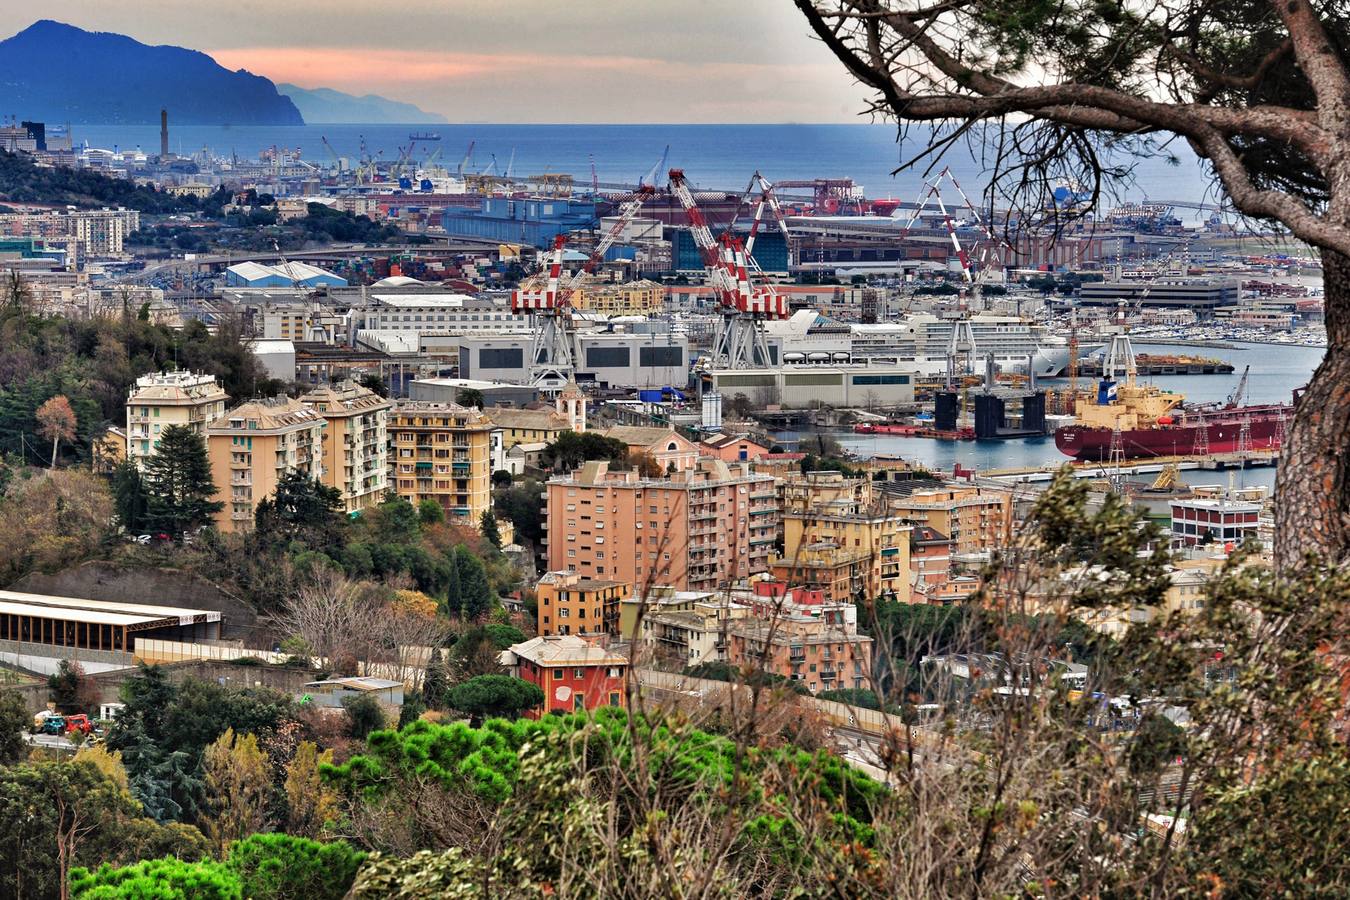 La capital de Liguria muestra al mundo su poderío cultural lanzando una nueva Ruta de la Seda que incluye a la capital del Segura, donde los italianos gozaron de enormes privilegios